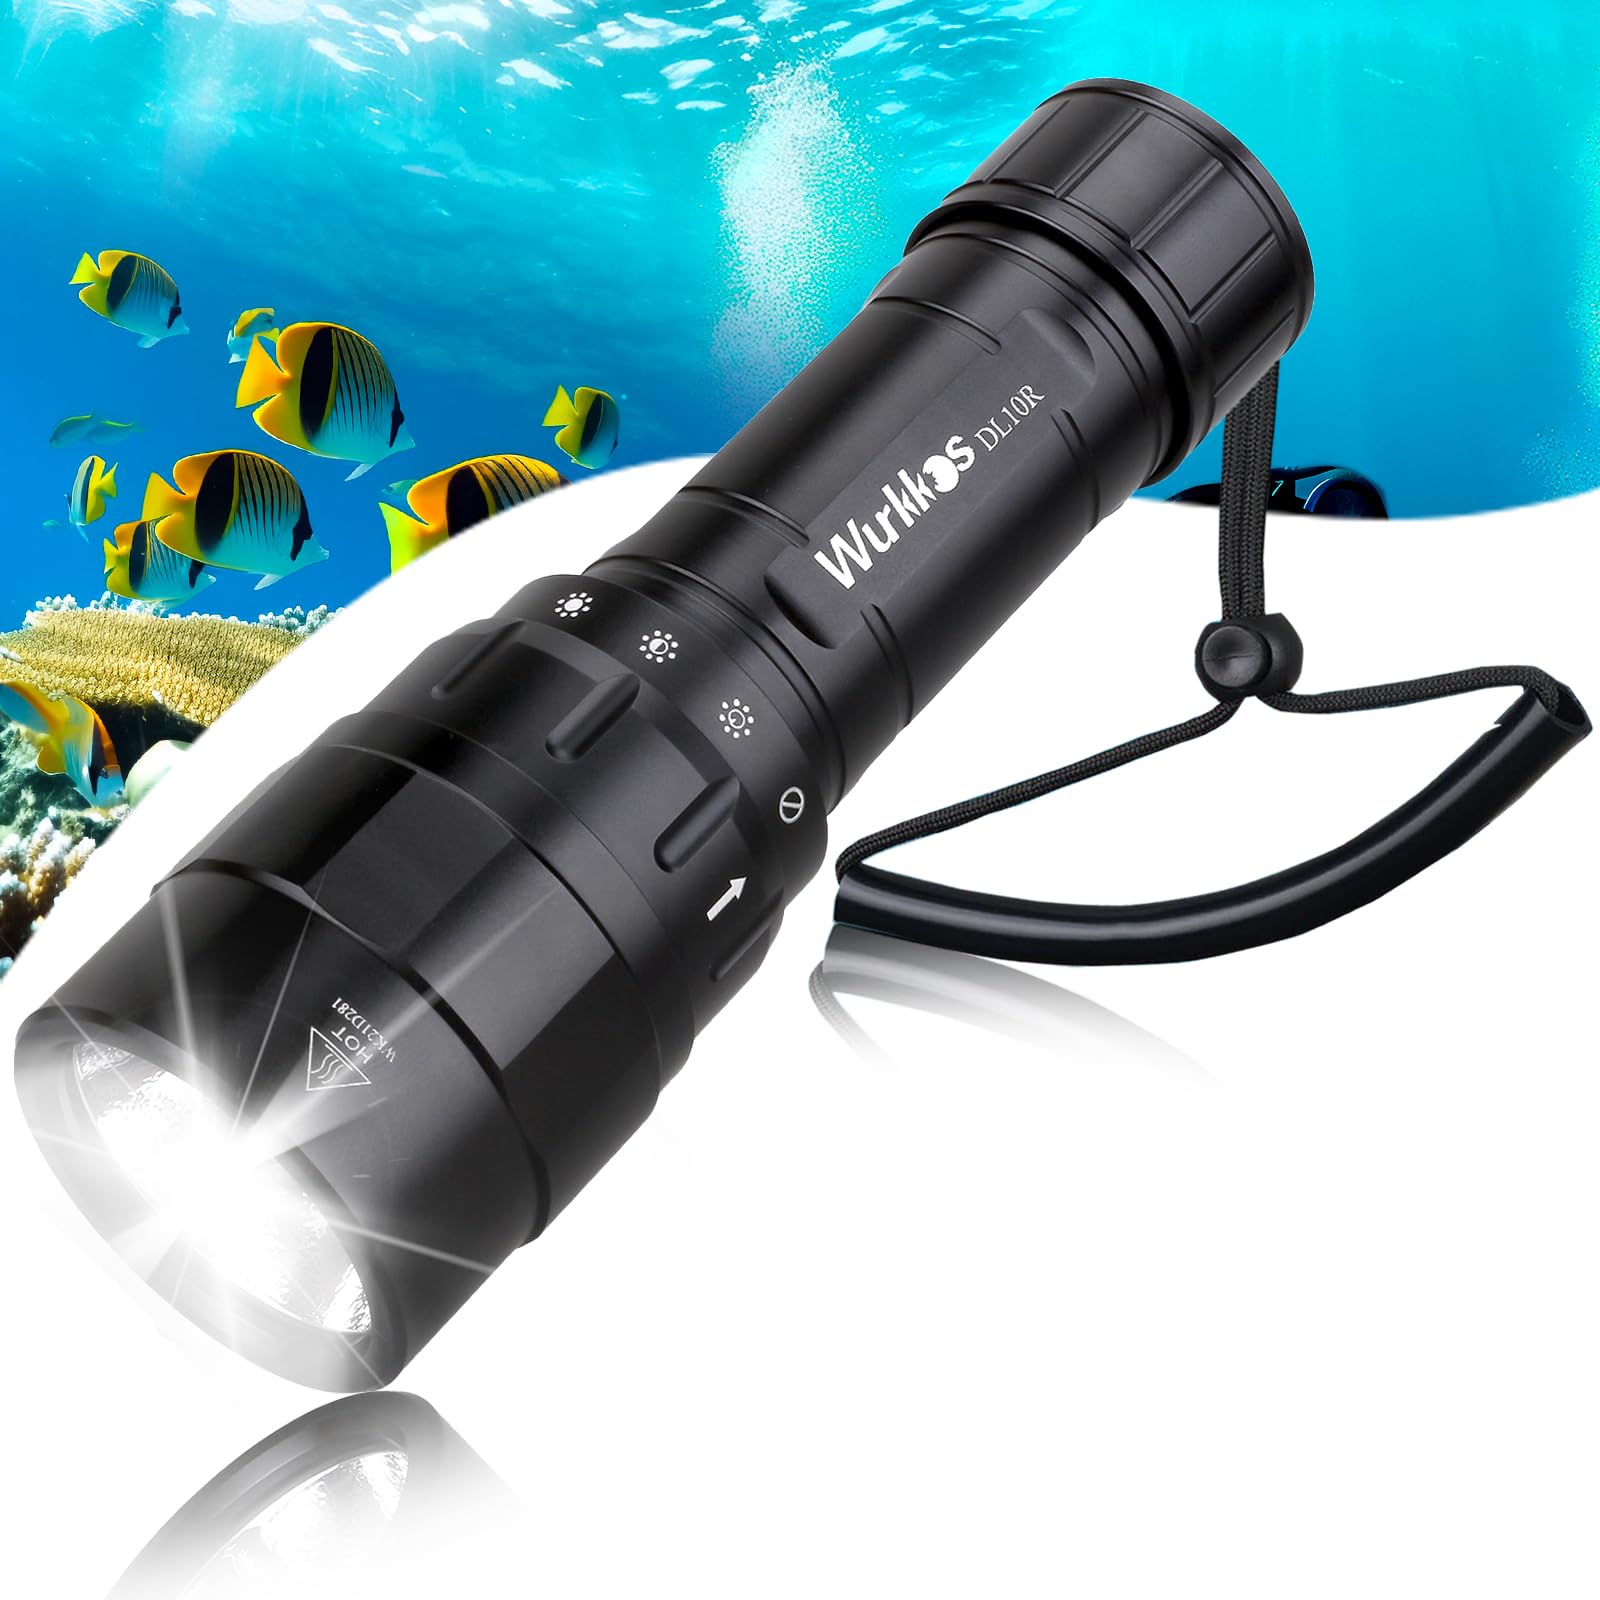 Wurkkos DL10R Tauch-Taschenlampe, 4500 lm, Unterwasserlicht, U-Boot Schnorchellicht, integrierter USB-C-Ladeanschluss, magnetischer Drehschalter, IPX-8 wasserdicht, inklusive 21700 Akku